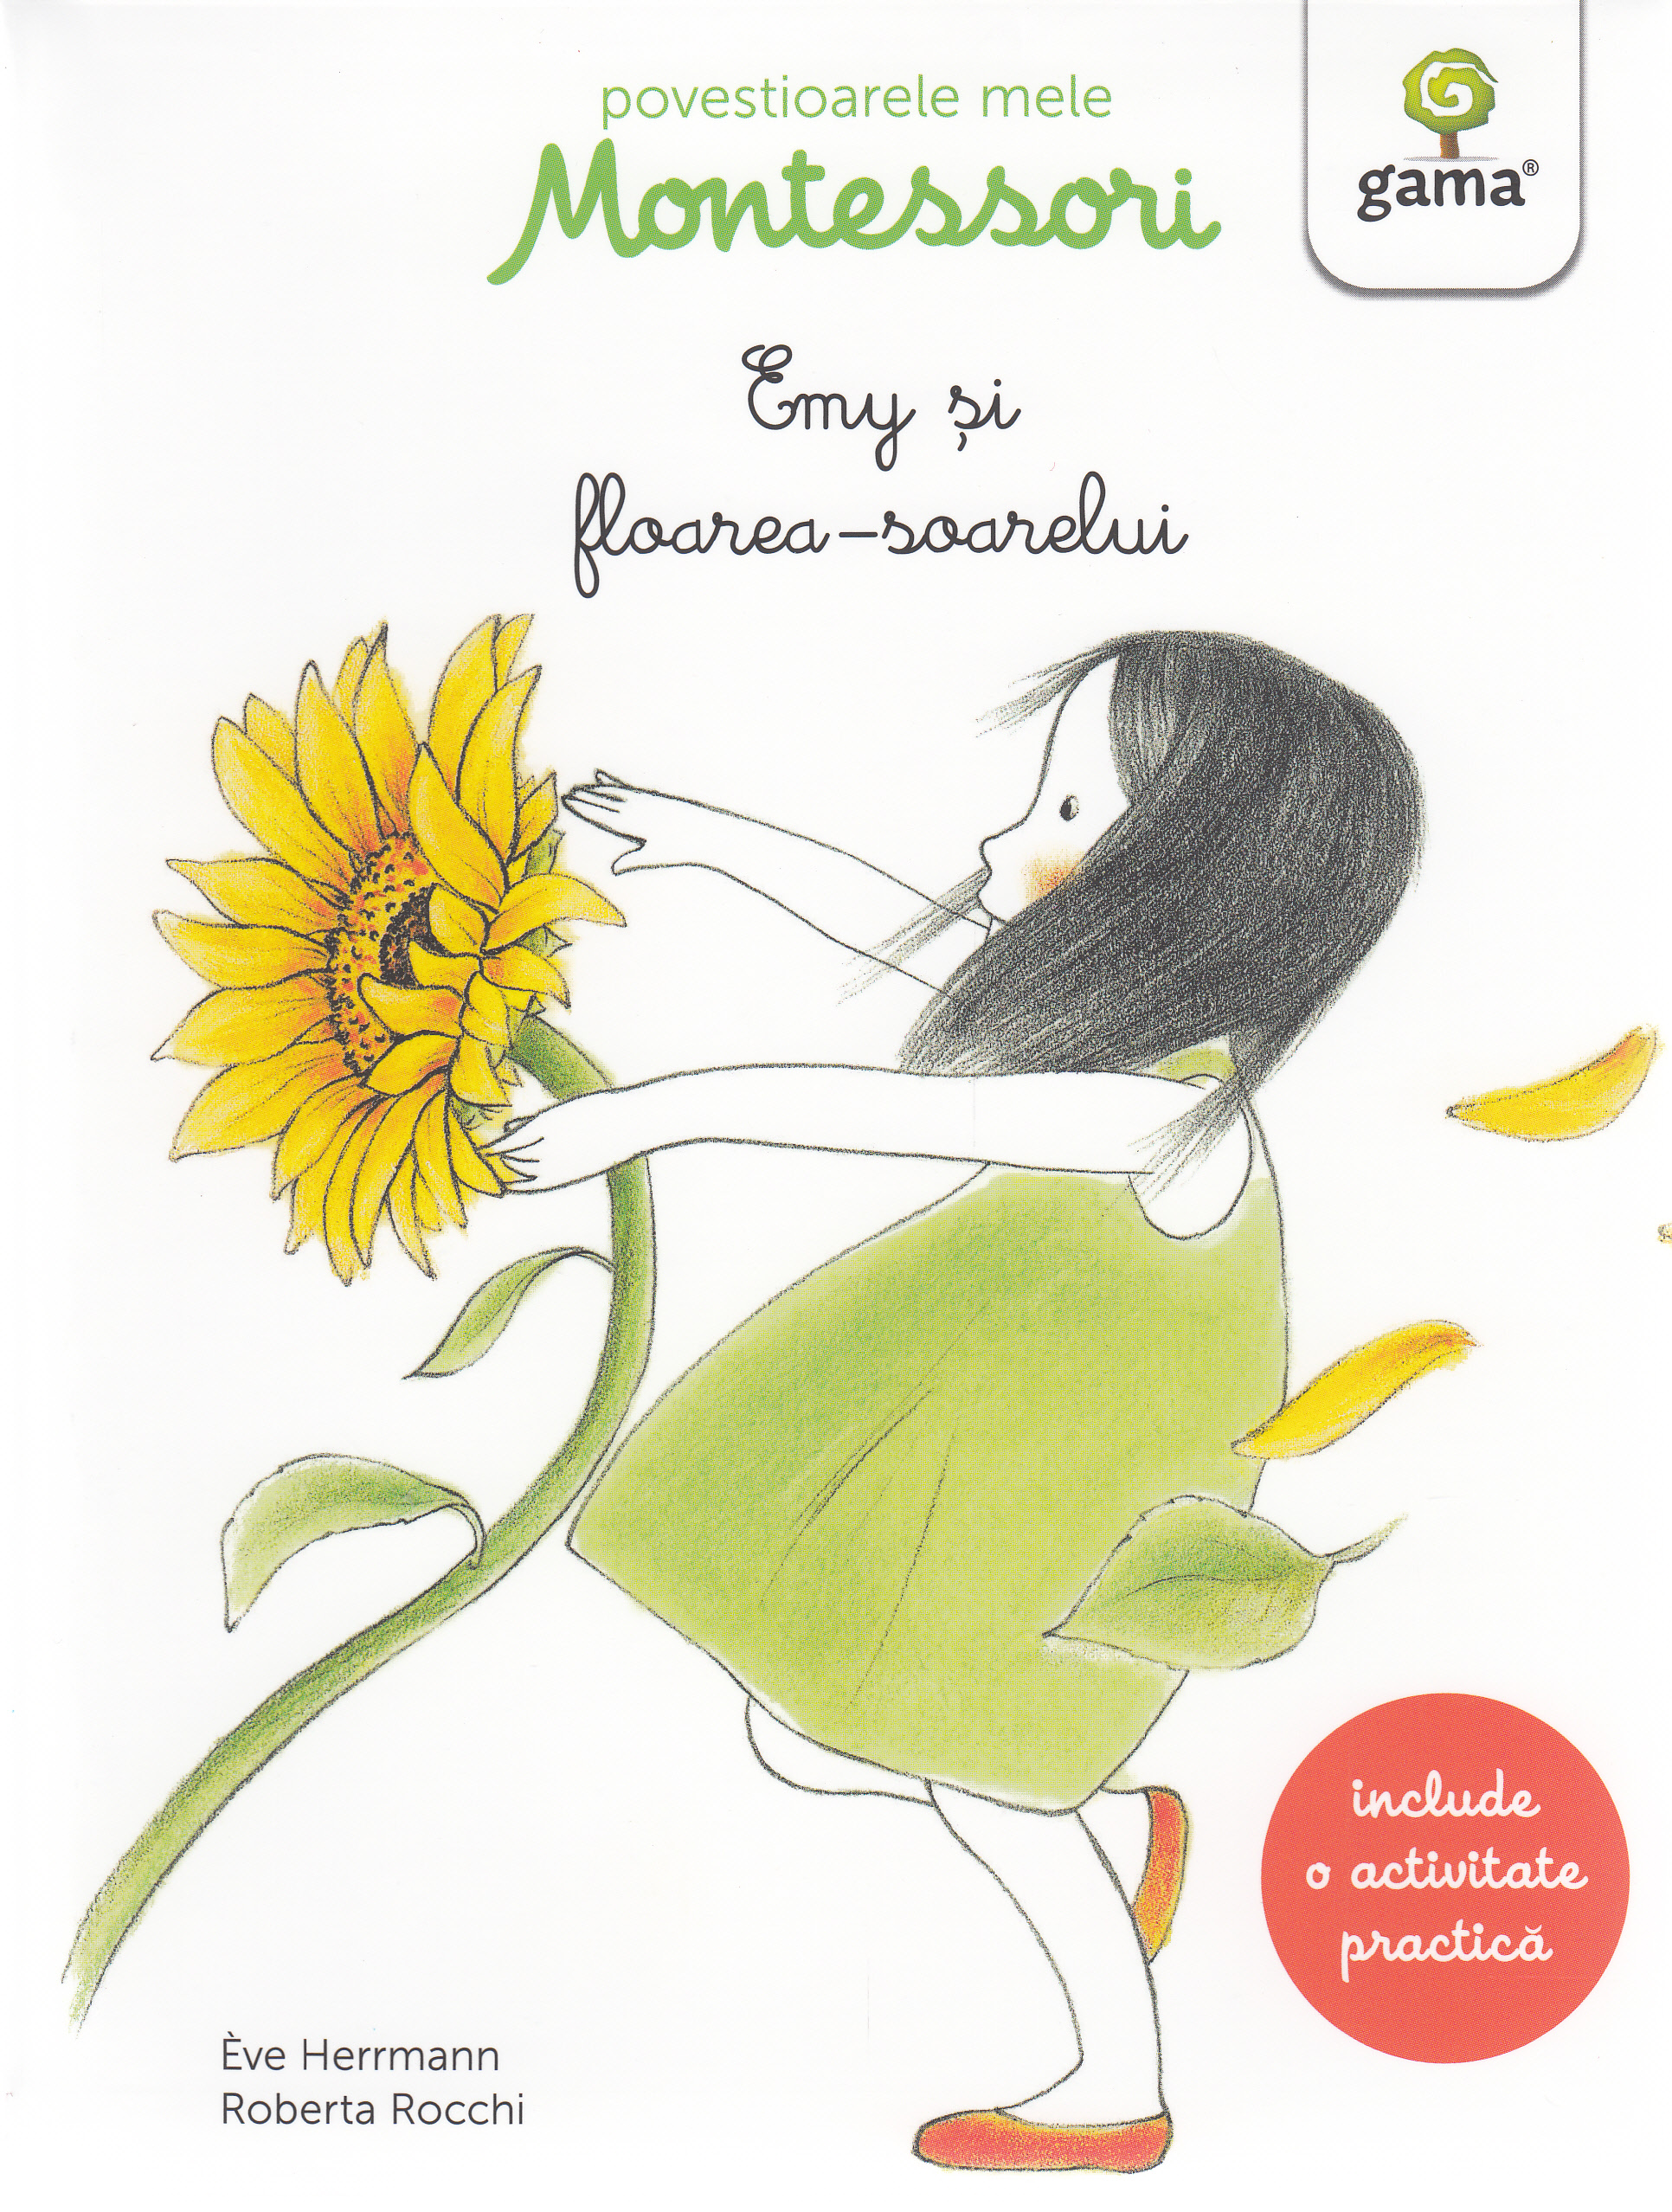 Povestioarele mele Montessori: Emy si florea-soarelui - Eve Herrmann, Roberta Rocchi